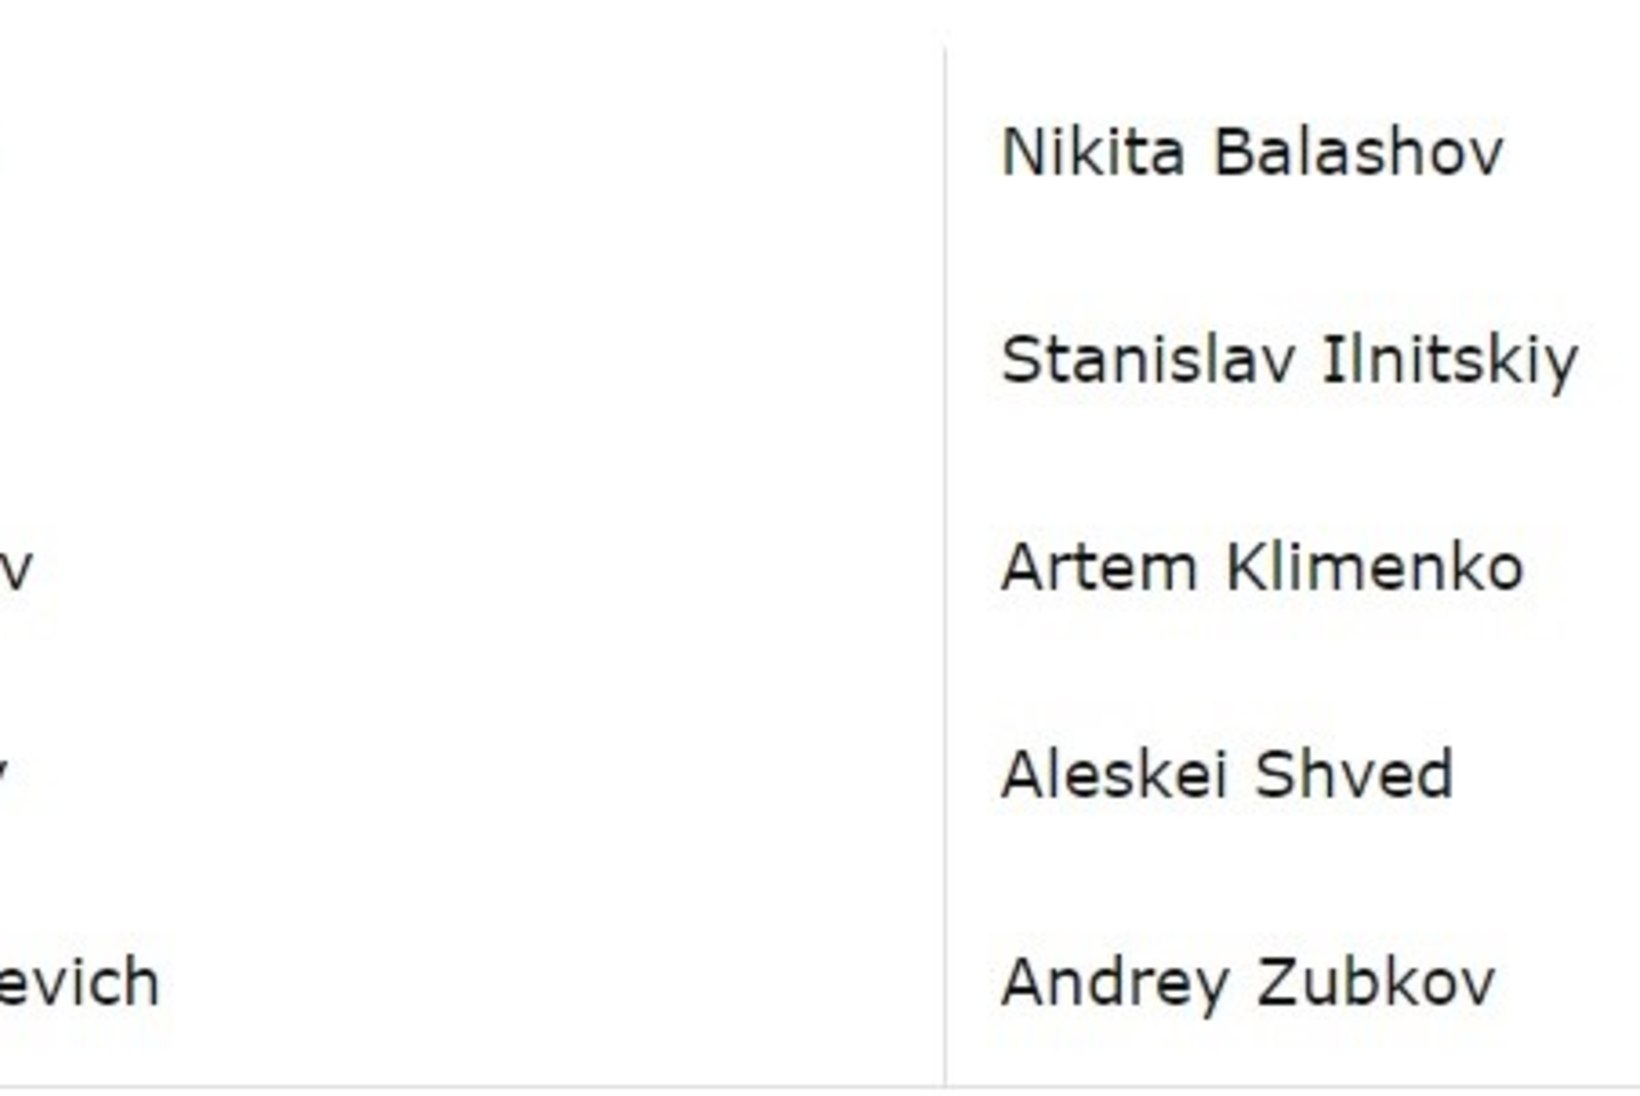 Venemaa korvpallikoondis tahab järgmisteks üliolulisteks mängudeks kokku ajada kogu kaardiväe eesotsas Švediga